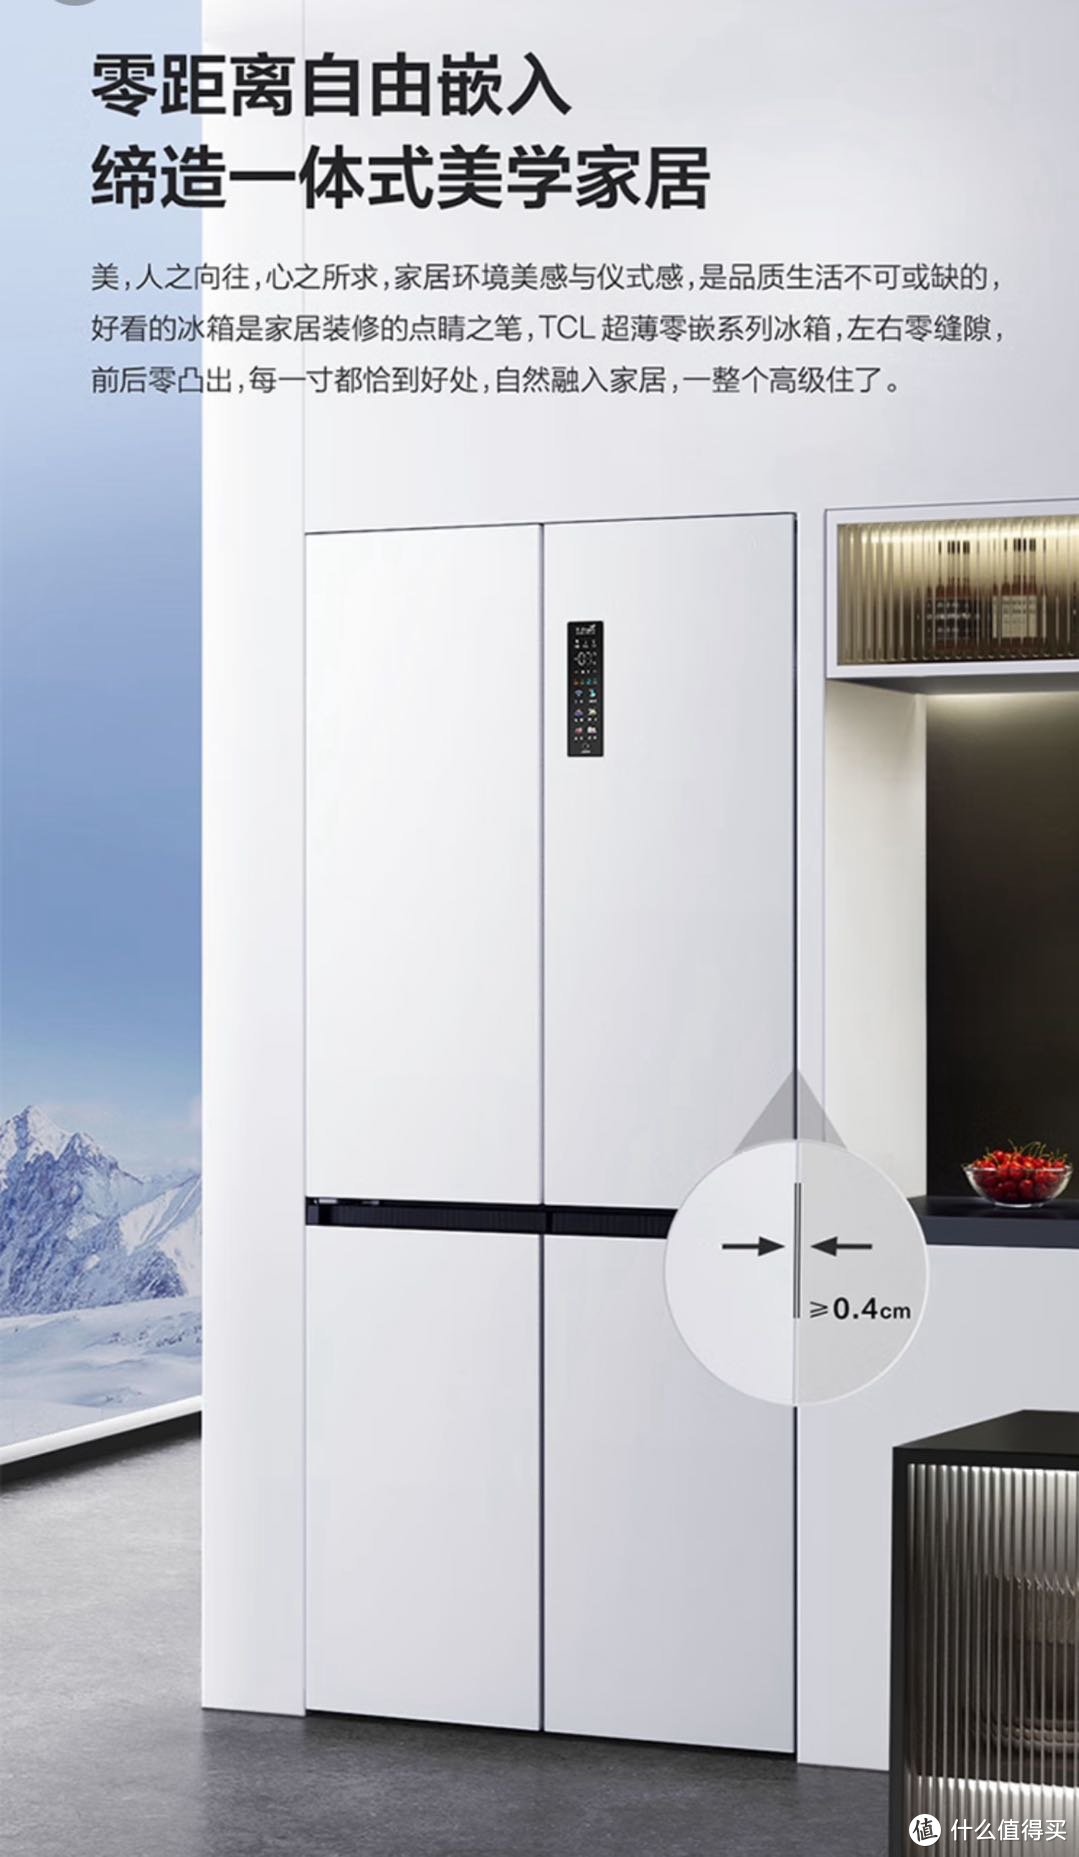 【评论有奖】了不起的TCL-双十一国产冰箱好物榜单 